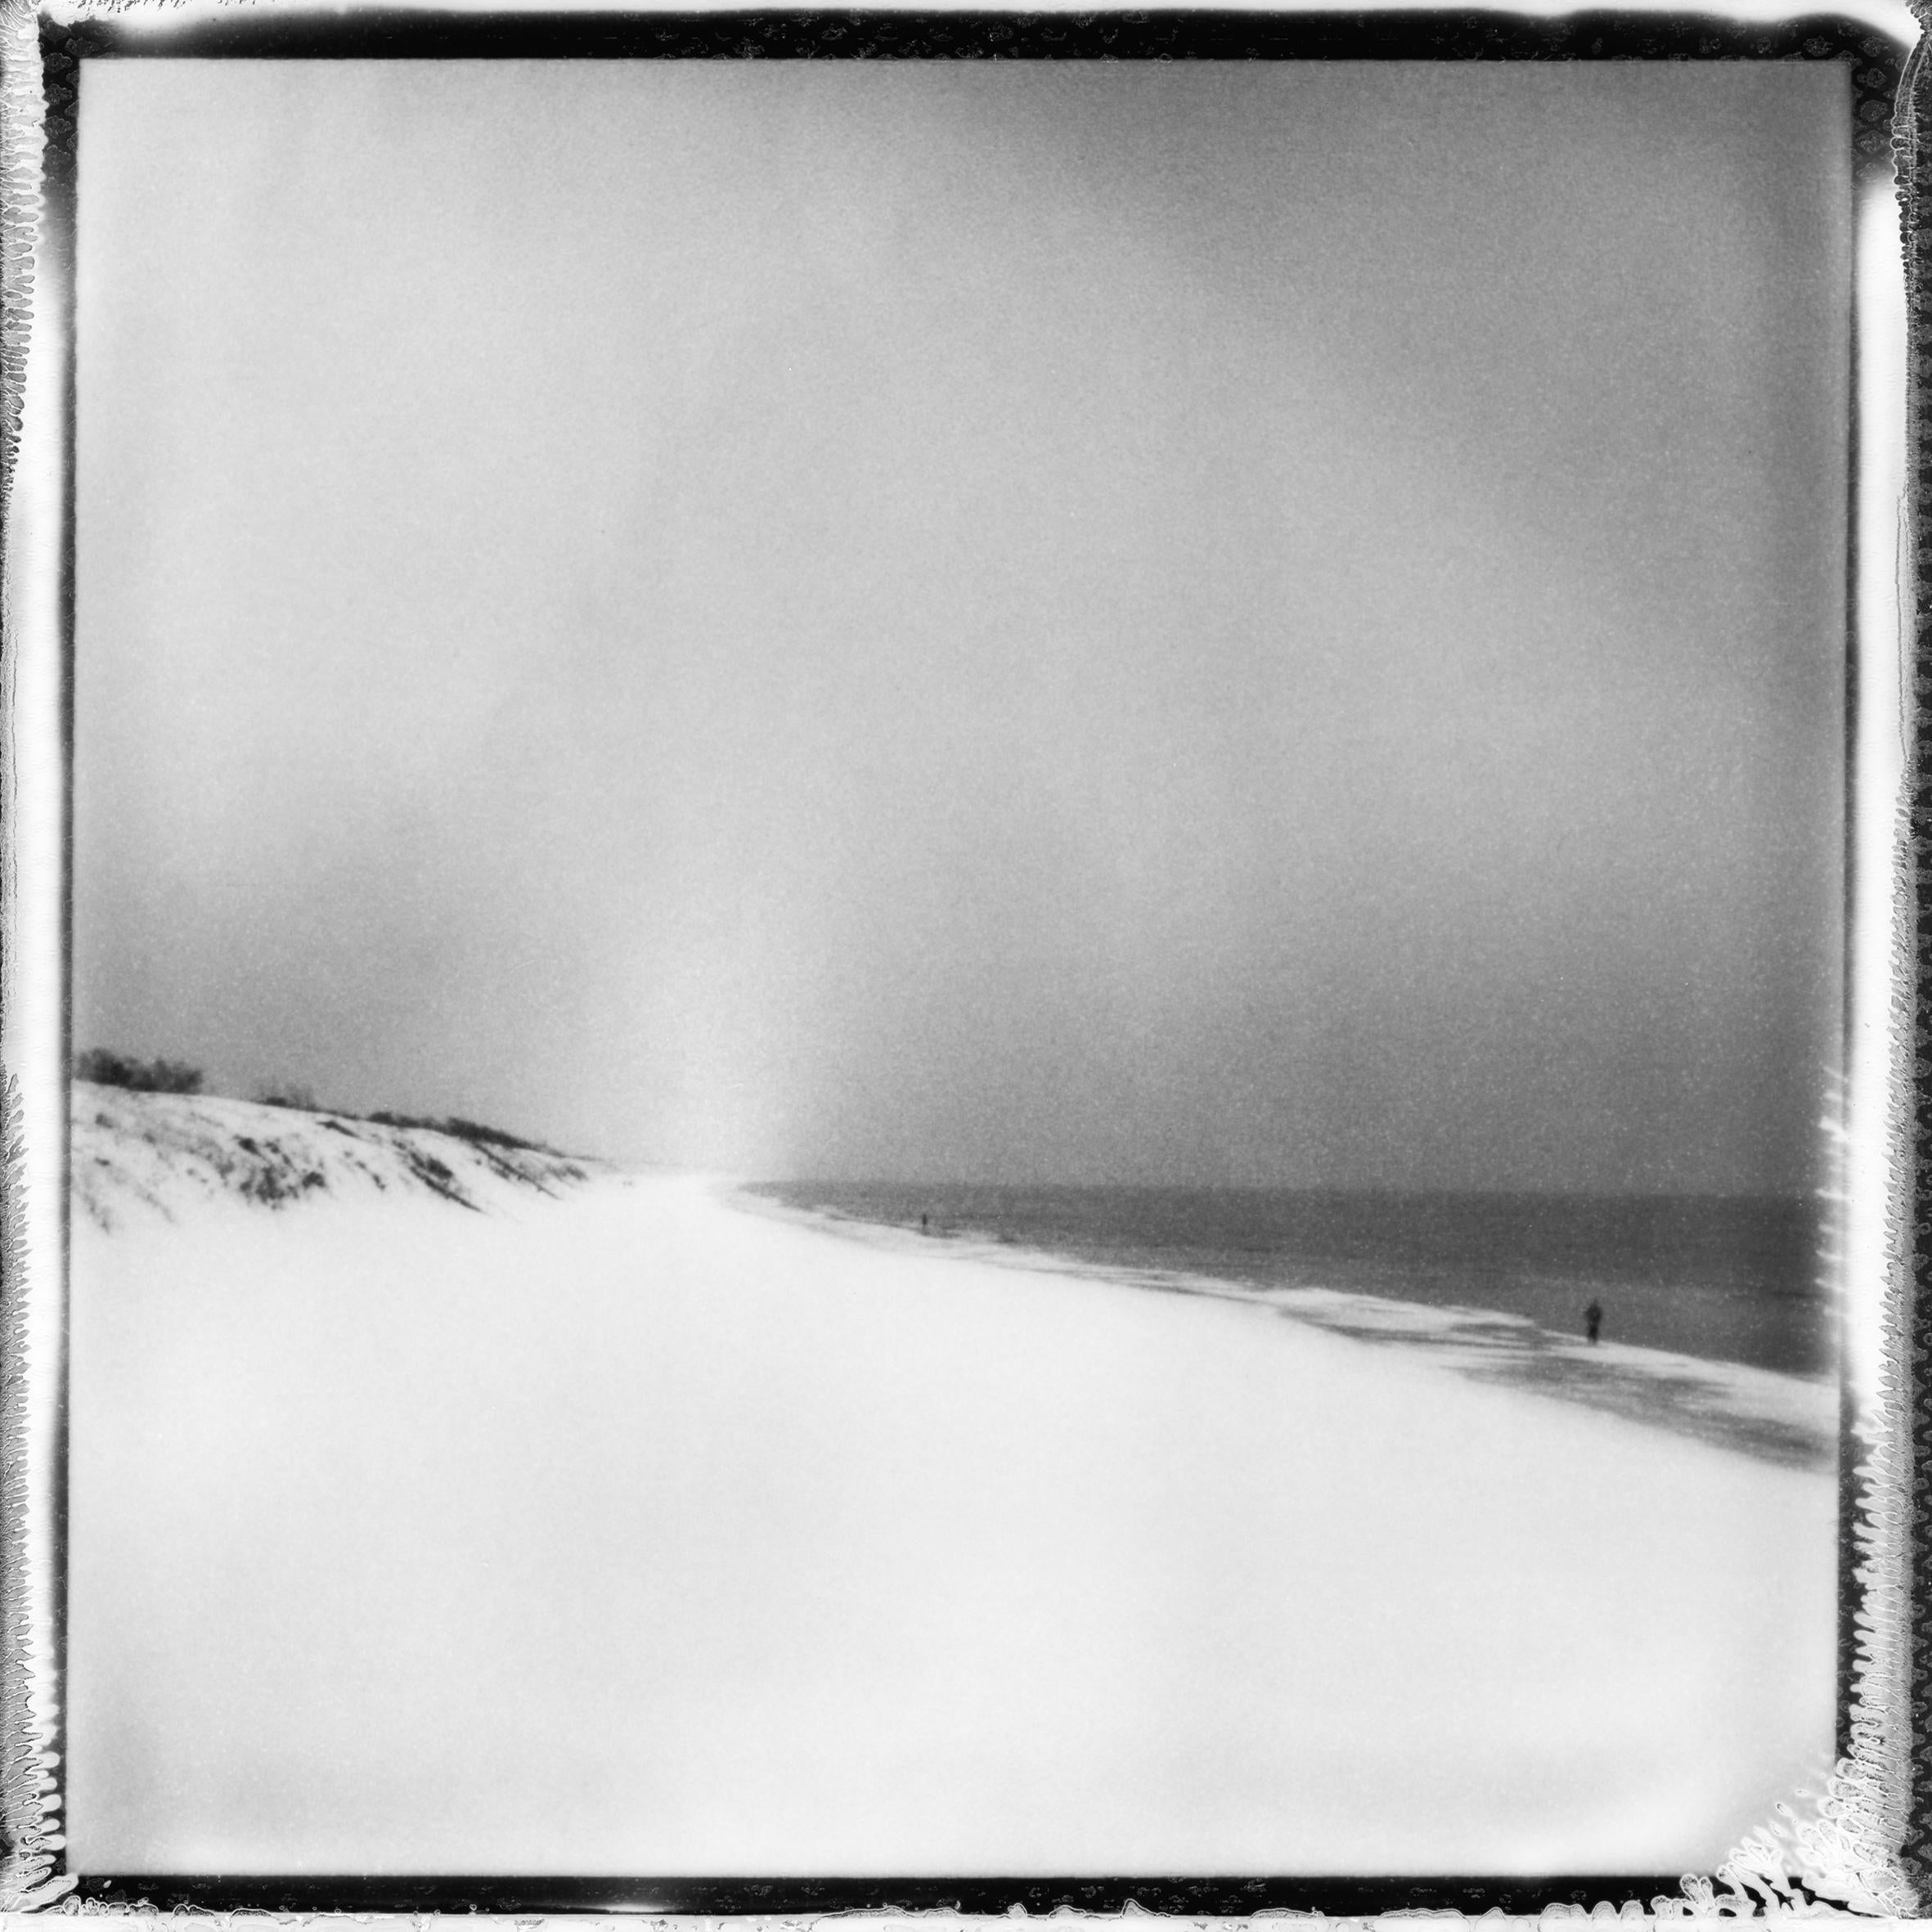 Plage gelée" - photographie de paysage analogique en noir et blanc